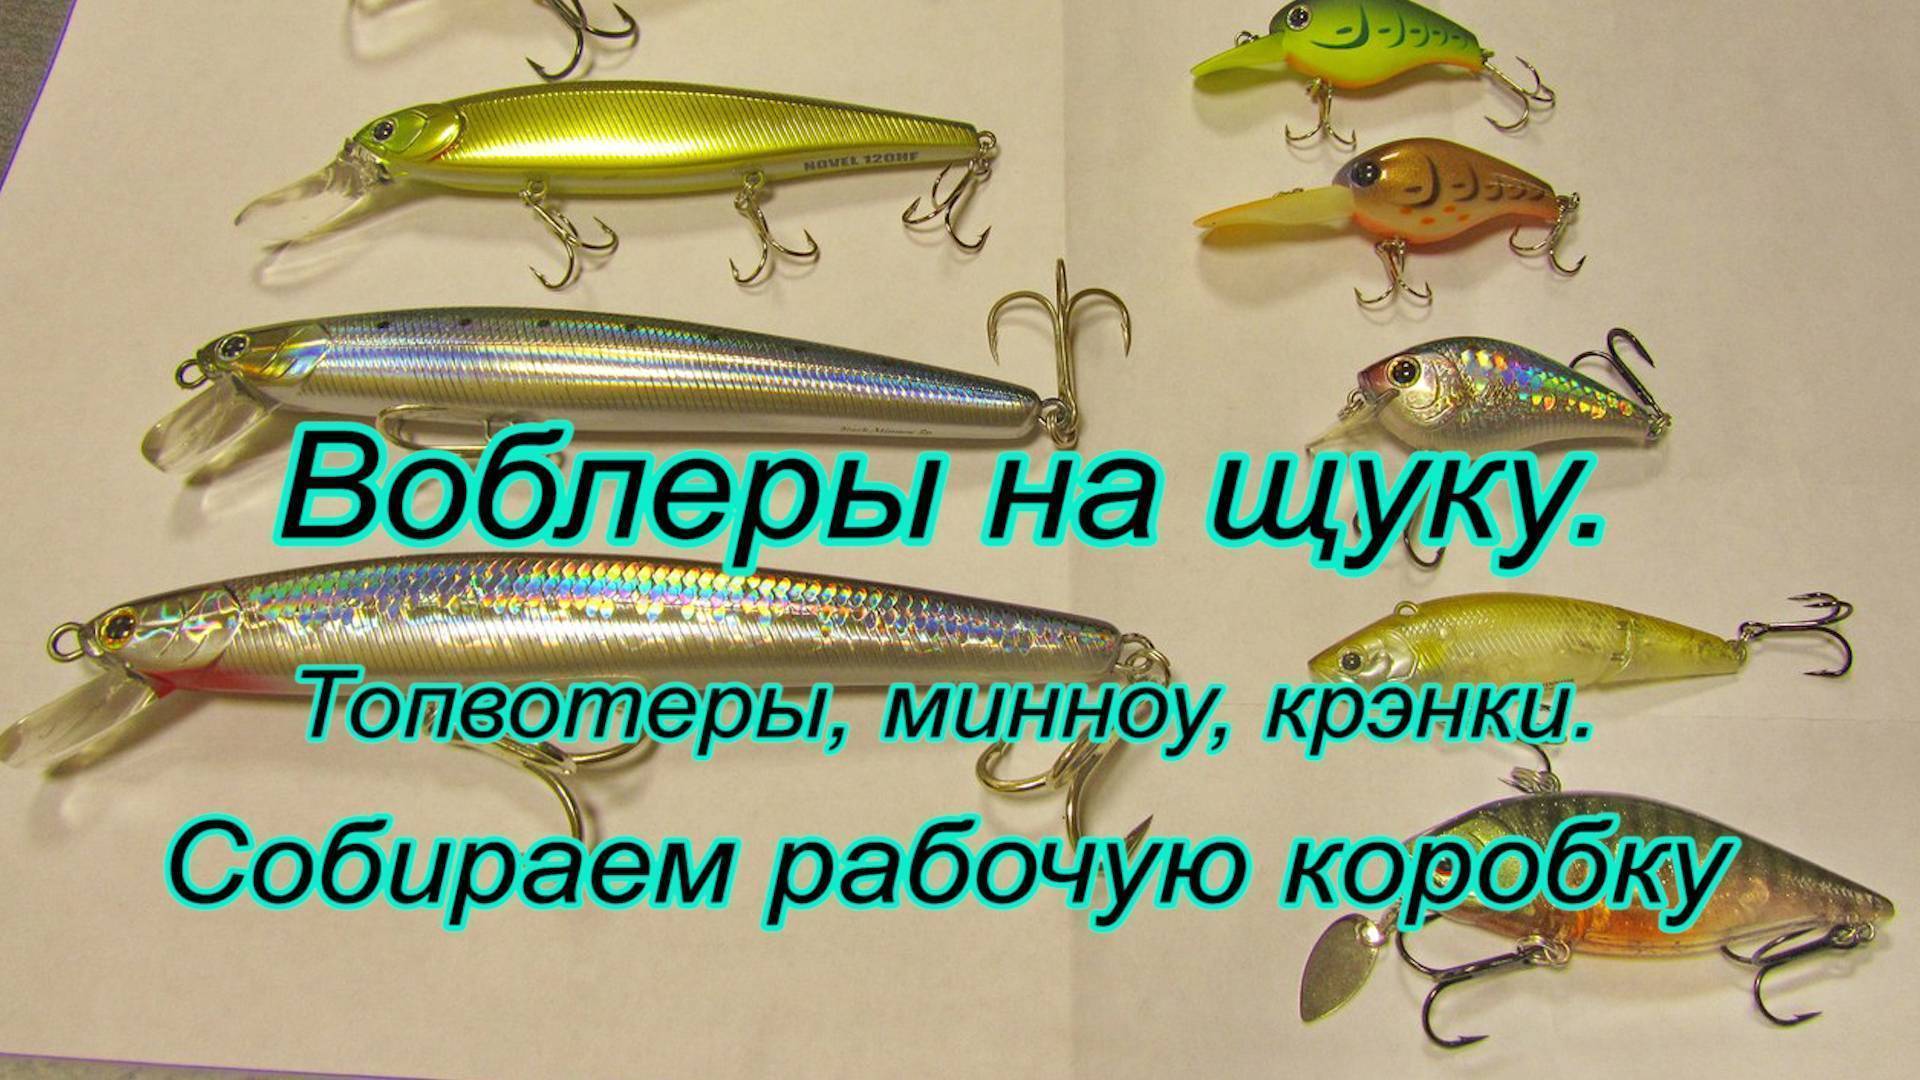 Способы проводки приманки для начинающих - читайте на сatcher.fish